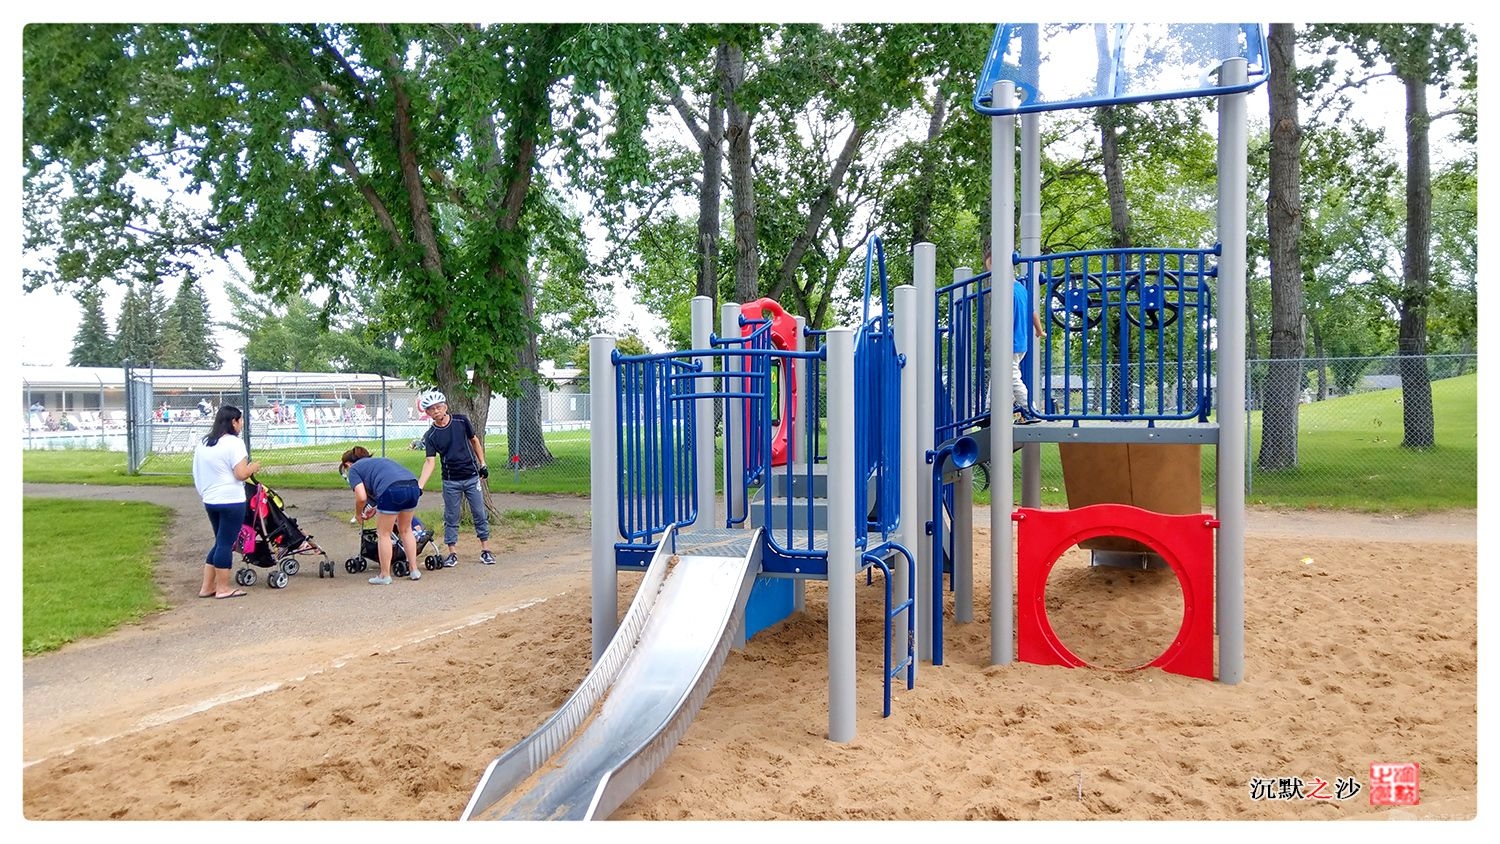 2019年7月24日 Holliston社区的儿童乐园.jpg